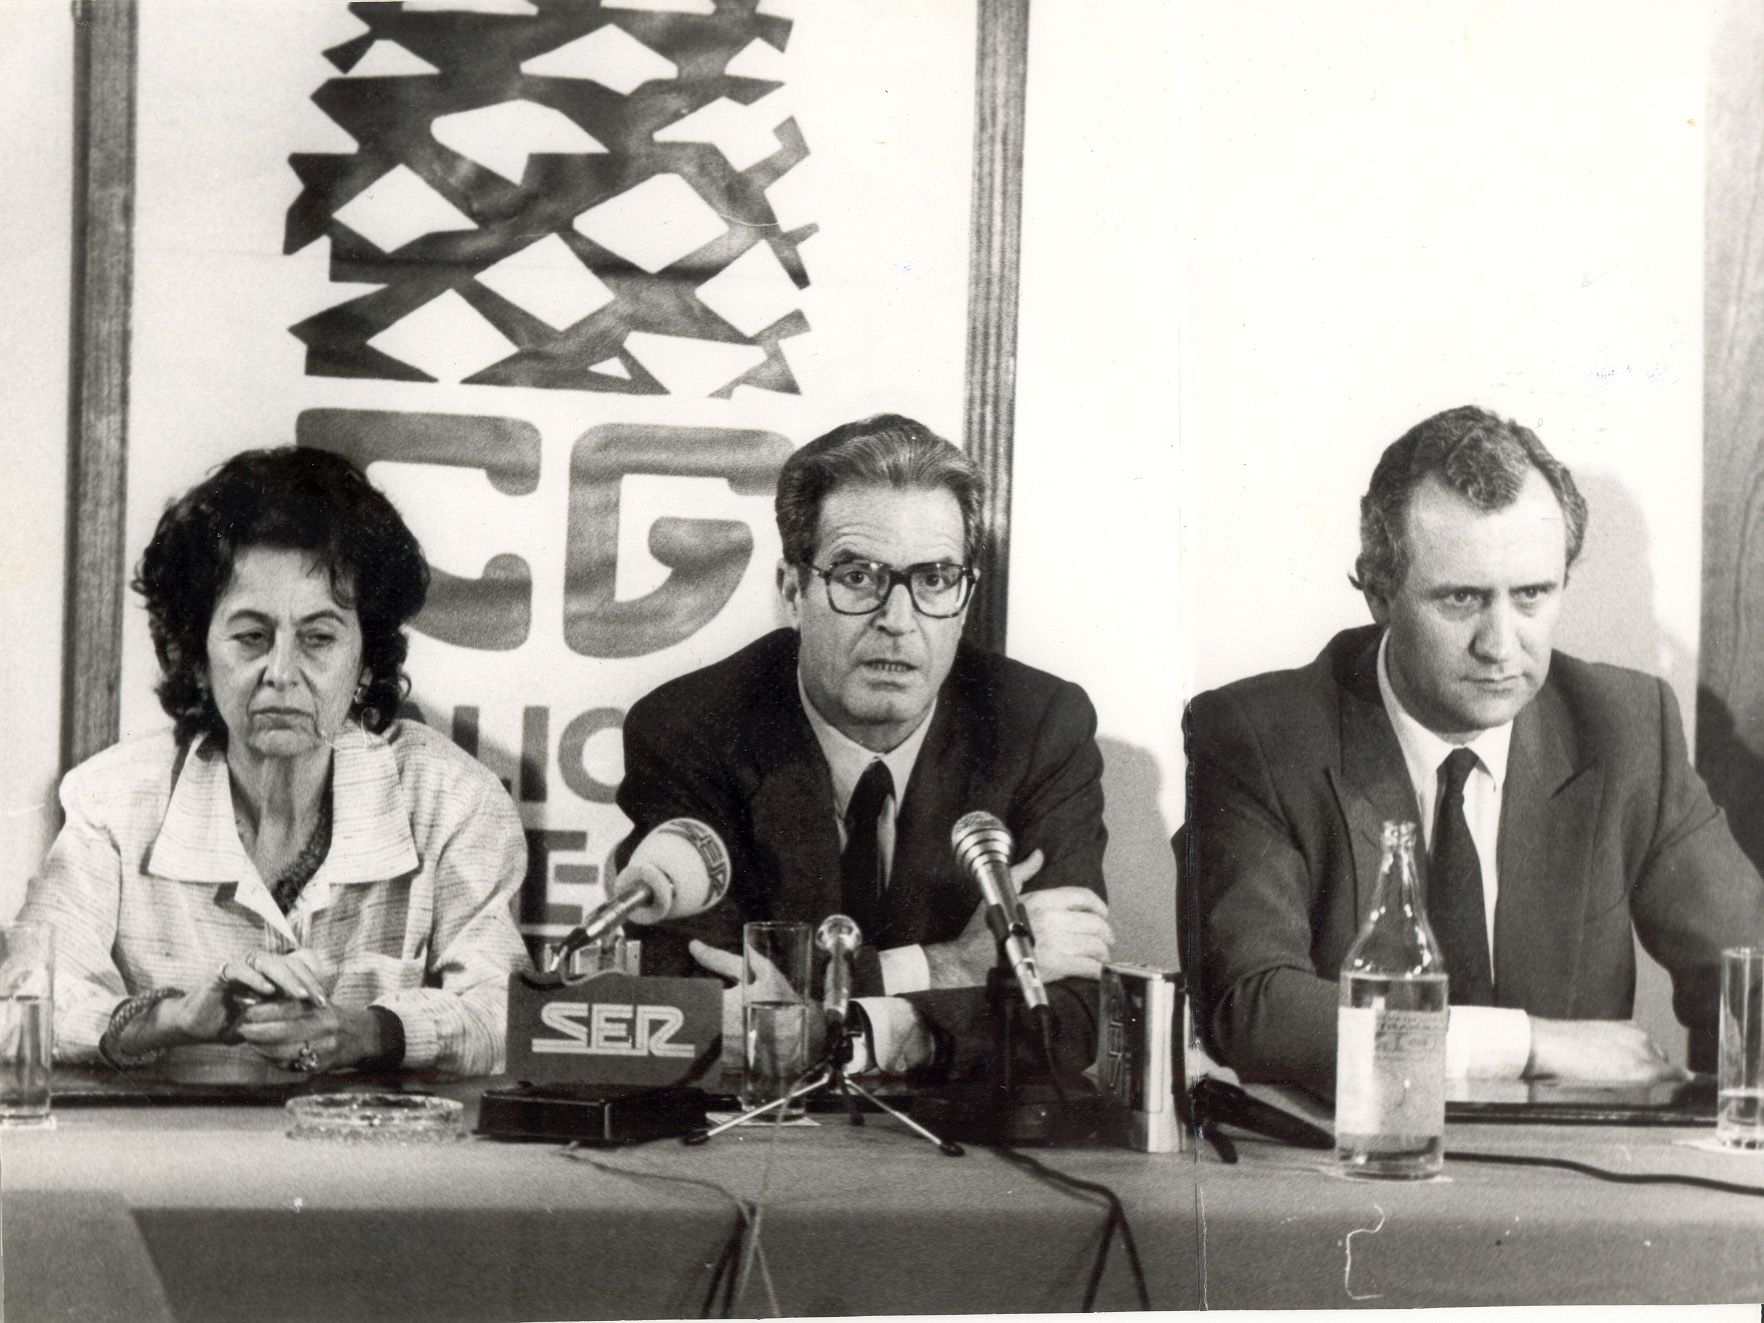 1986 - Rueda de prensa con Garriguez Walker y Rodríguez Peña - Material cedido por El Correo Gallego.